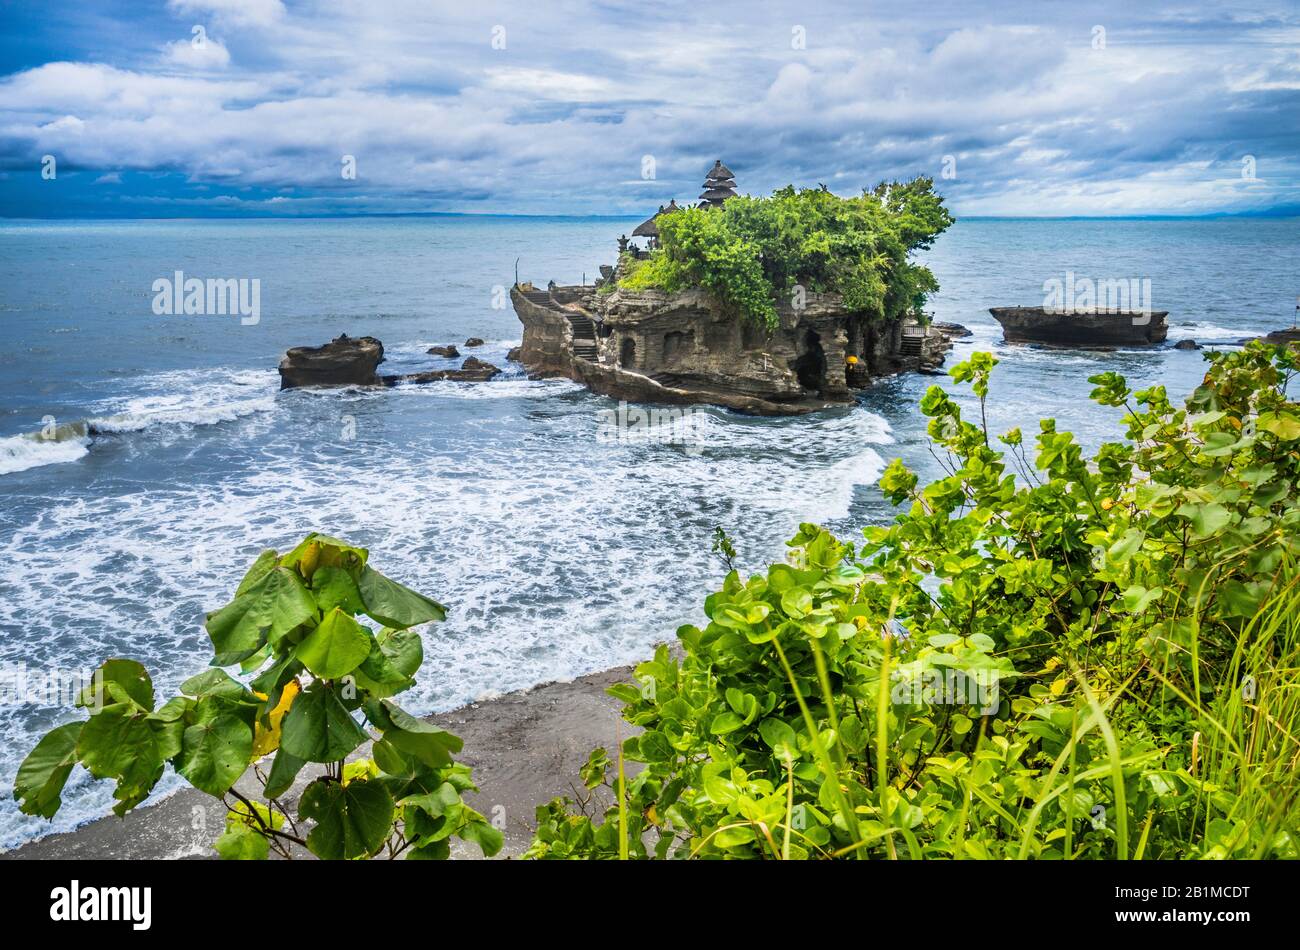 Vue sur Tanah Lot, une formation de roches au large de l'île indonésienne de Bali, qui abrite un ancien temple de pèlerinage hindou Pura Tanah Lot, Bali, Indonésie Banque D'Images